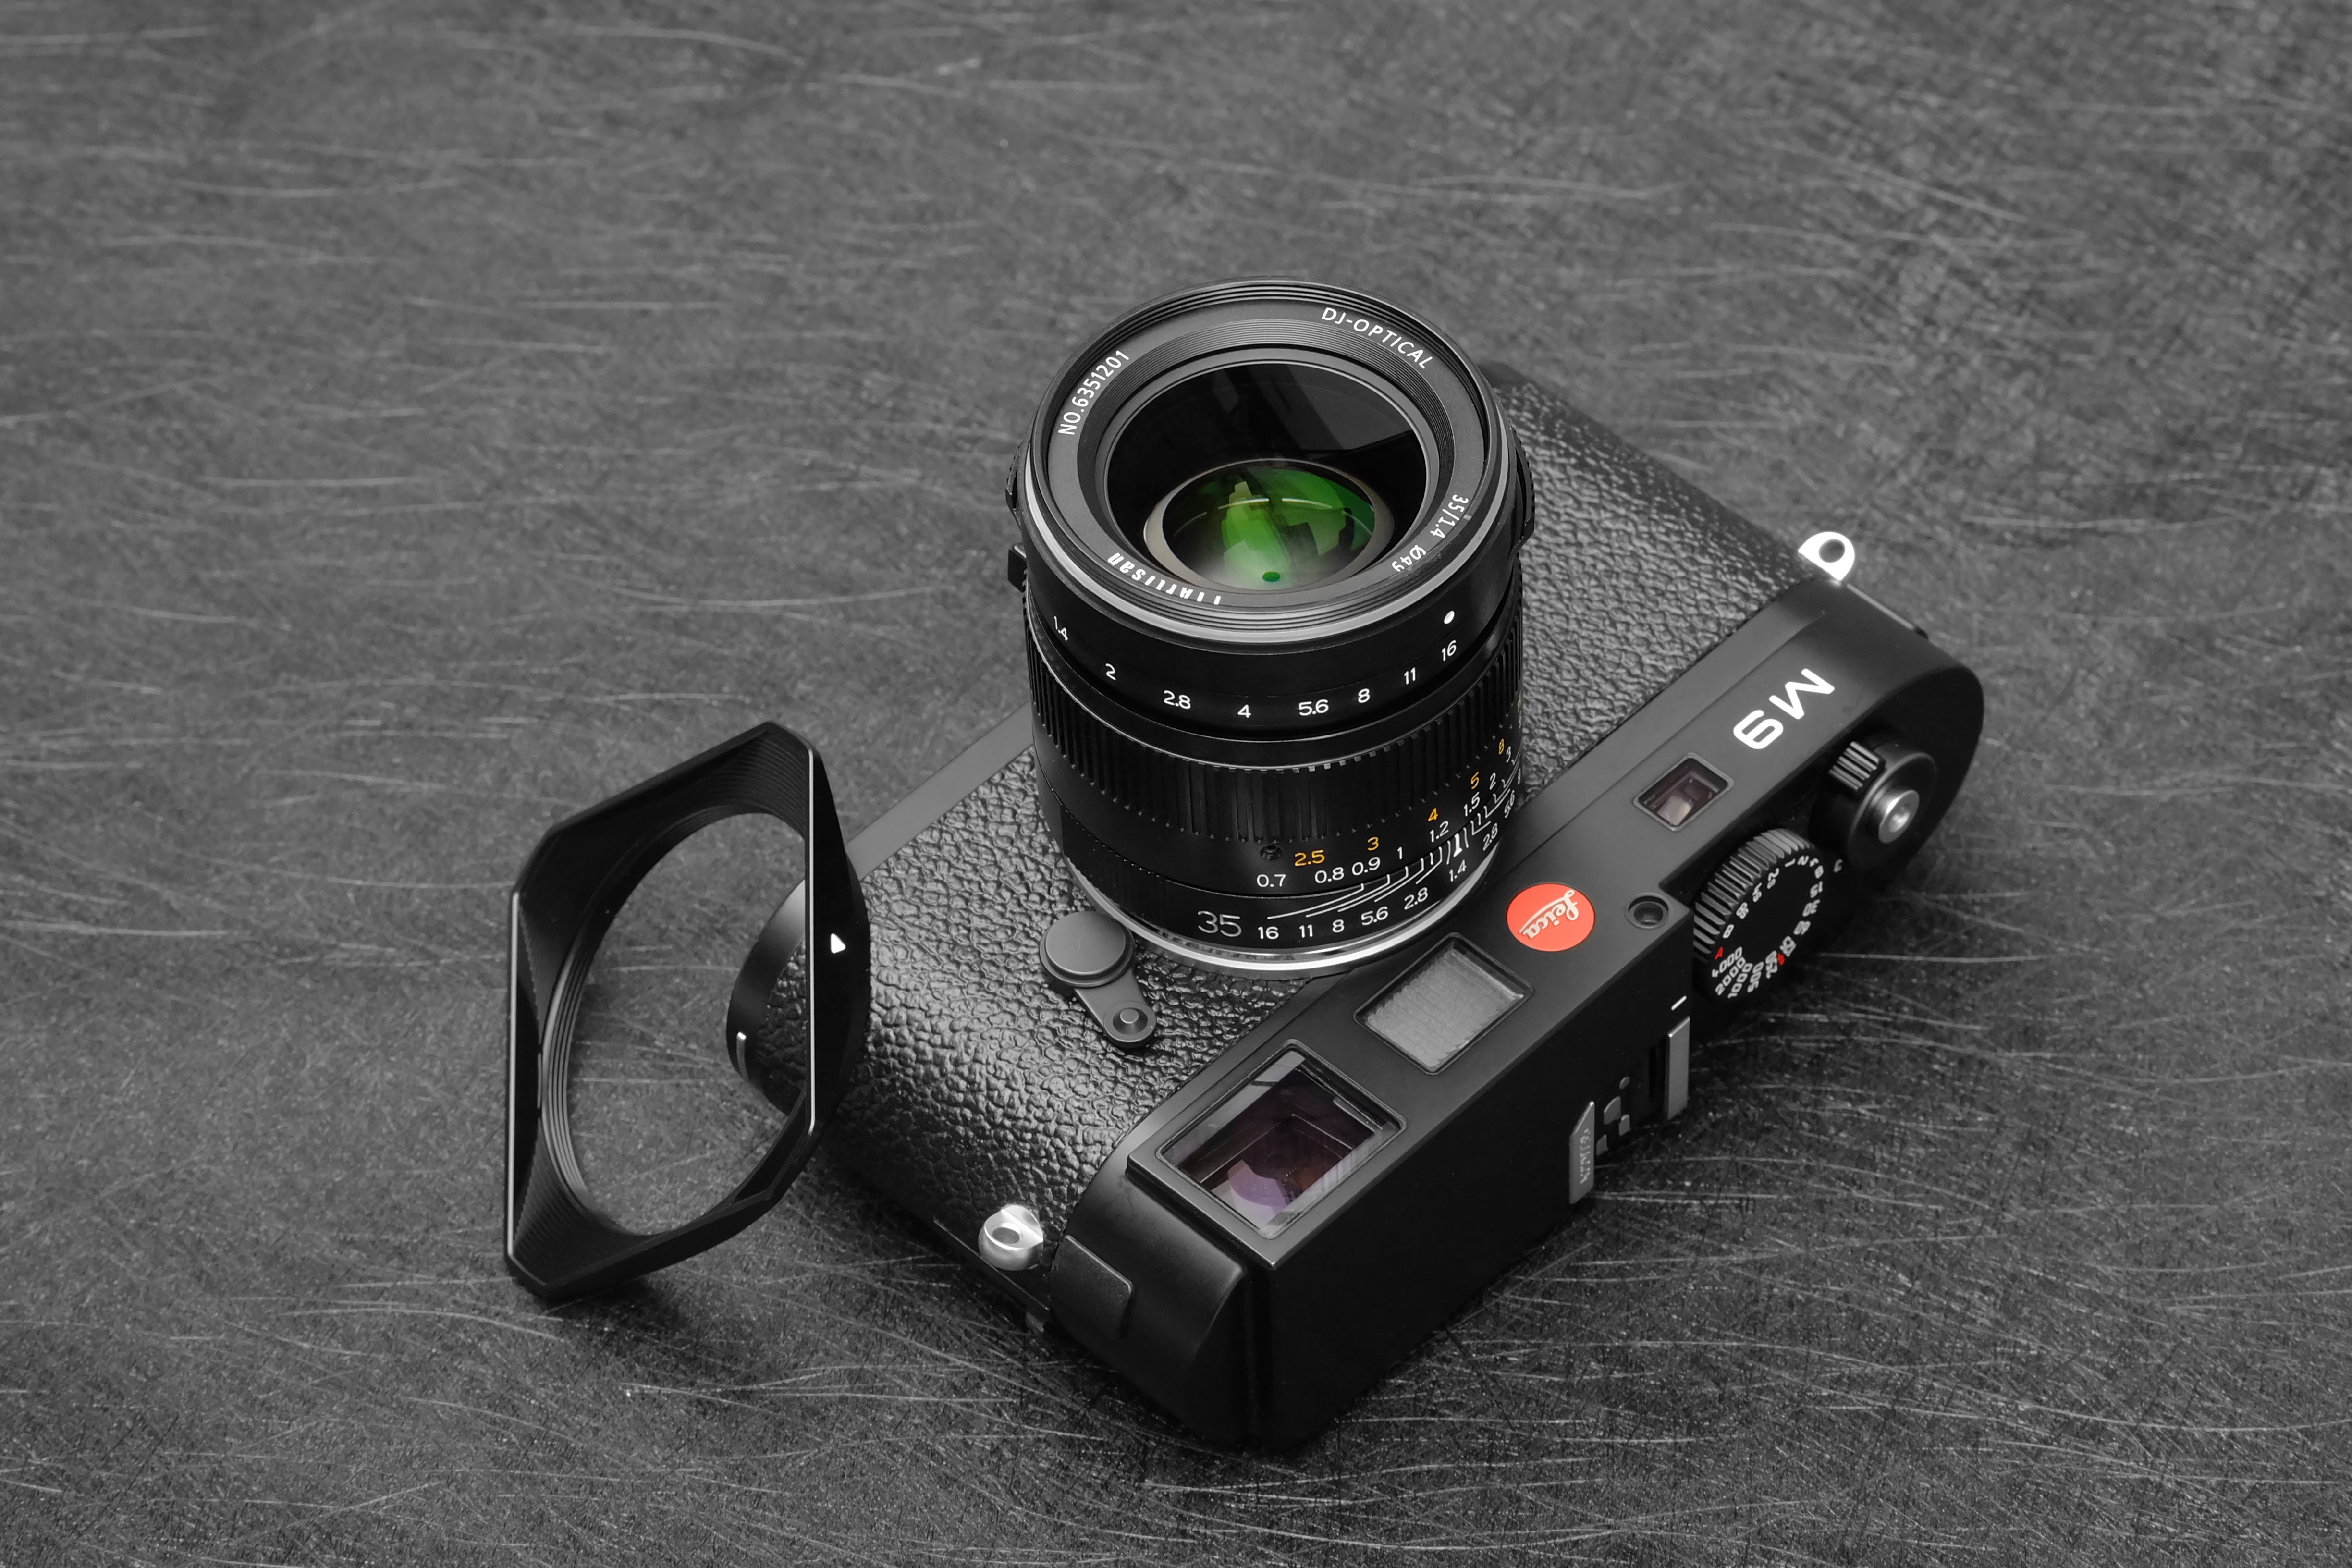 TTARTISAN 35mm f1.4 LM Leica M Full Frame, black